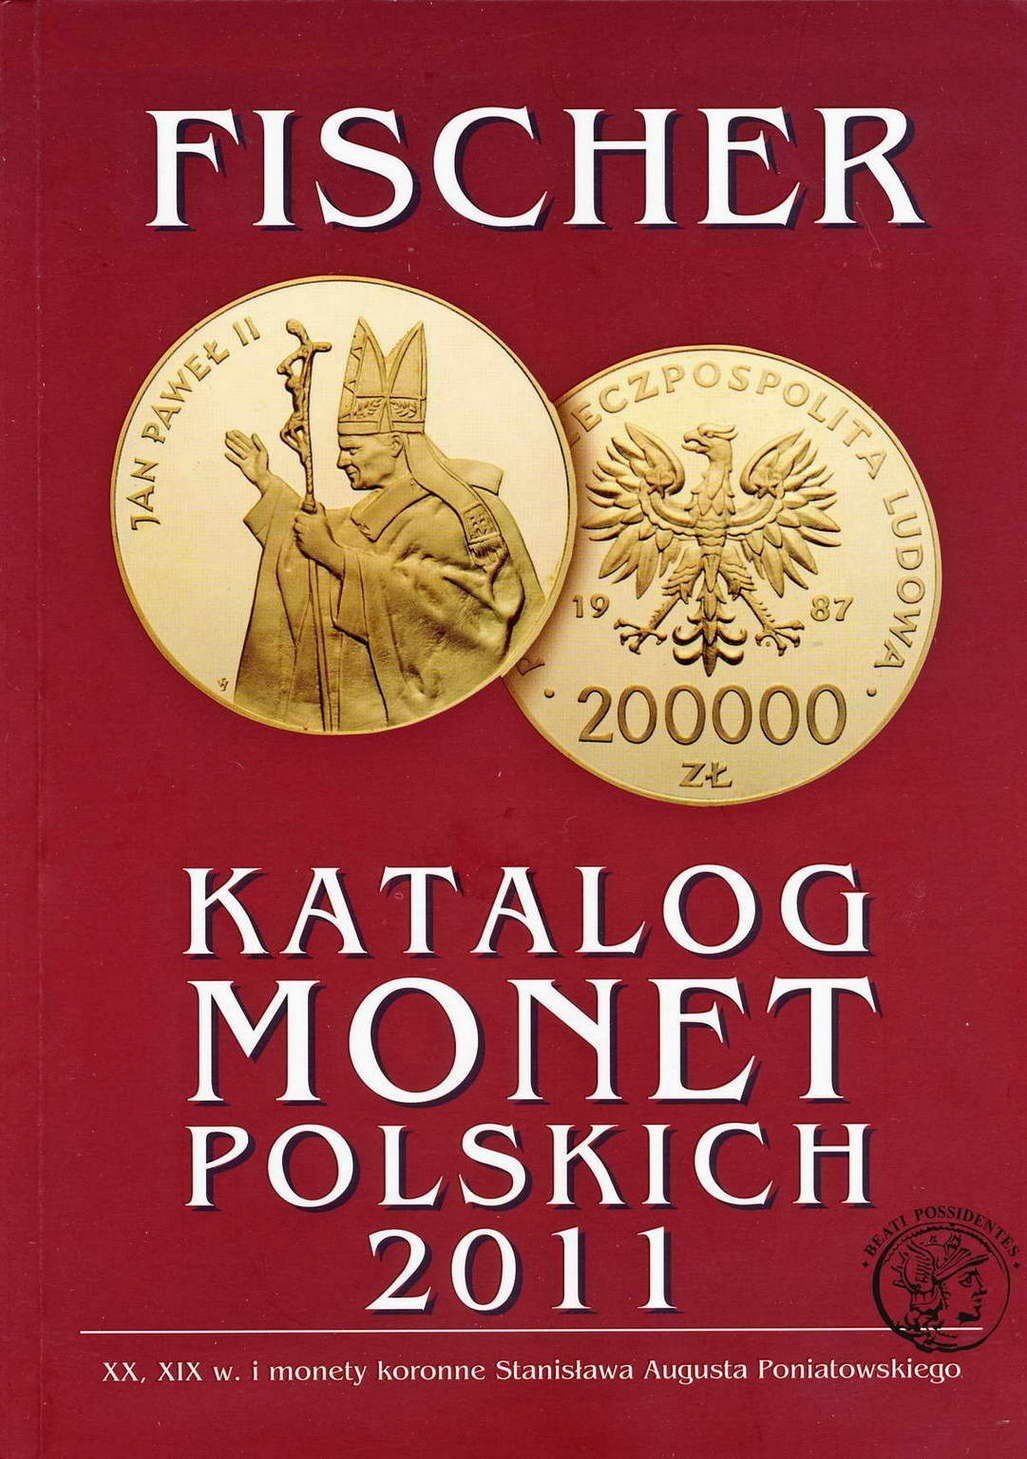 Katalog monet polskich FISCHER 2011